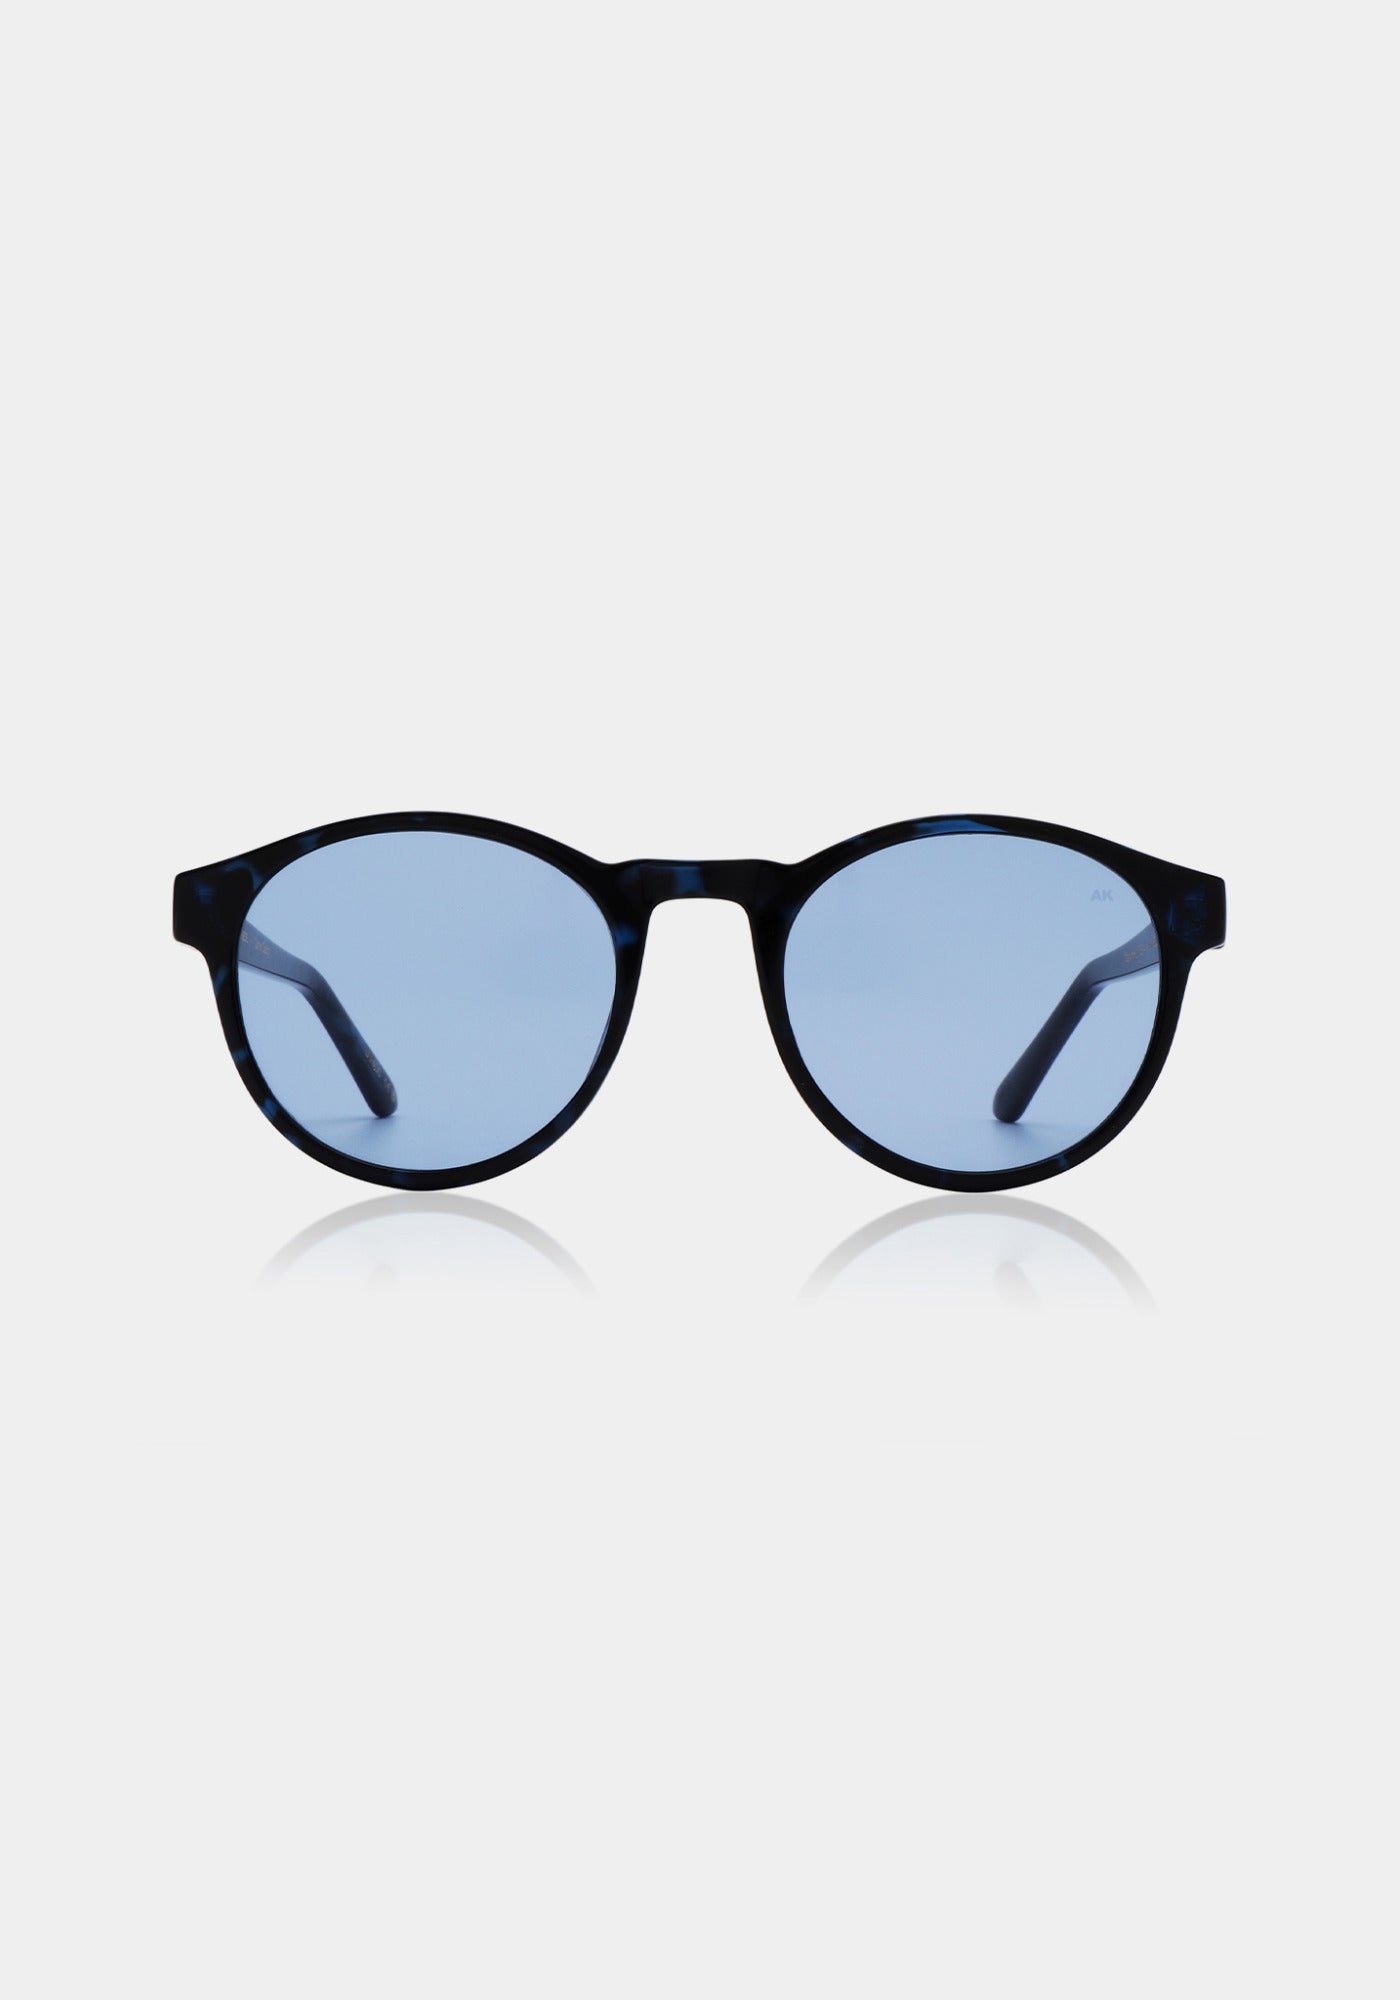 Les lunettes de soleil Marvin demi blue de chez A.Kjaerbede